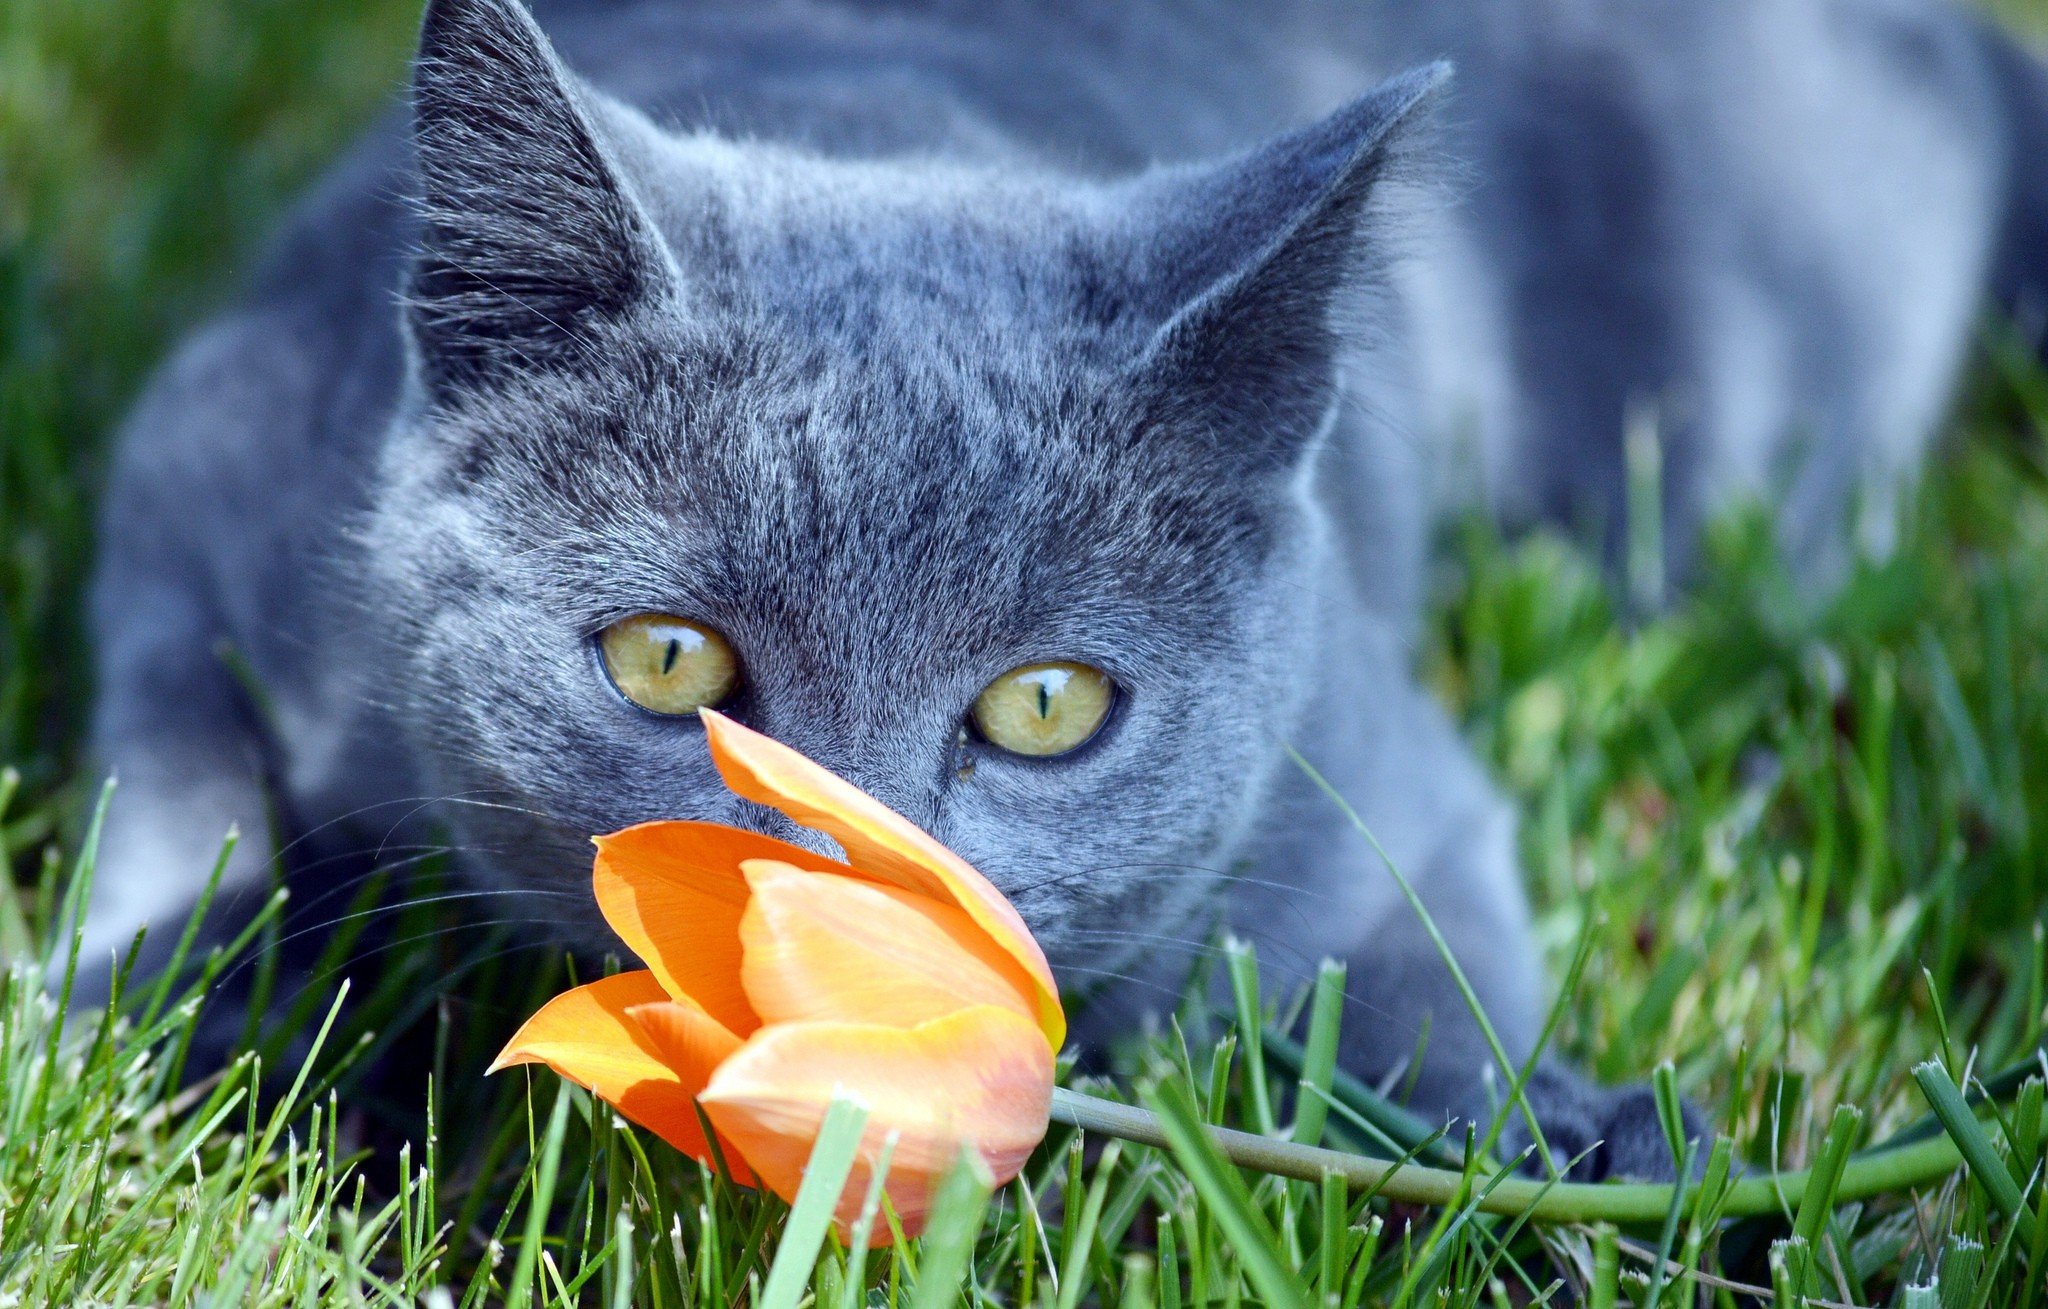 可愛いお花に囲まれた猫の壁紙 : 可愛い猫の壁紙画像集 - NAVER まとめ